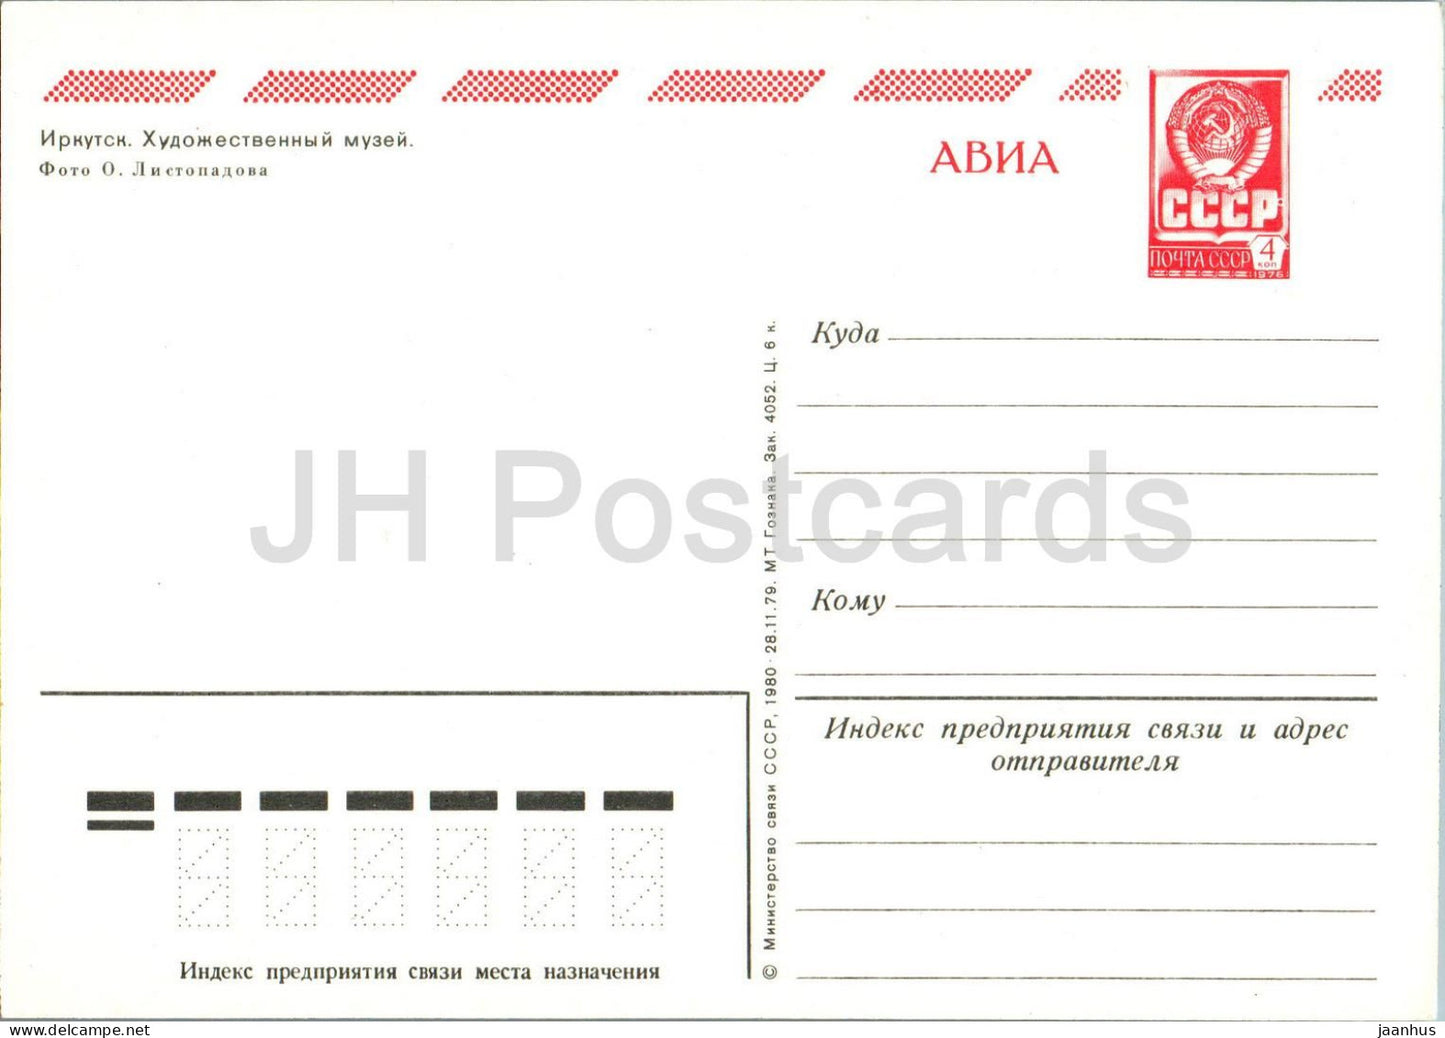 Irkoutsk - Musée d'art - entier postal - AVIA - 1980 - Russie URSS - inutilisé 